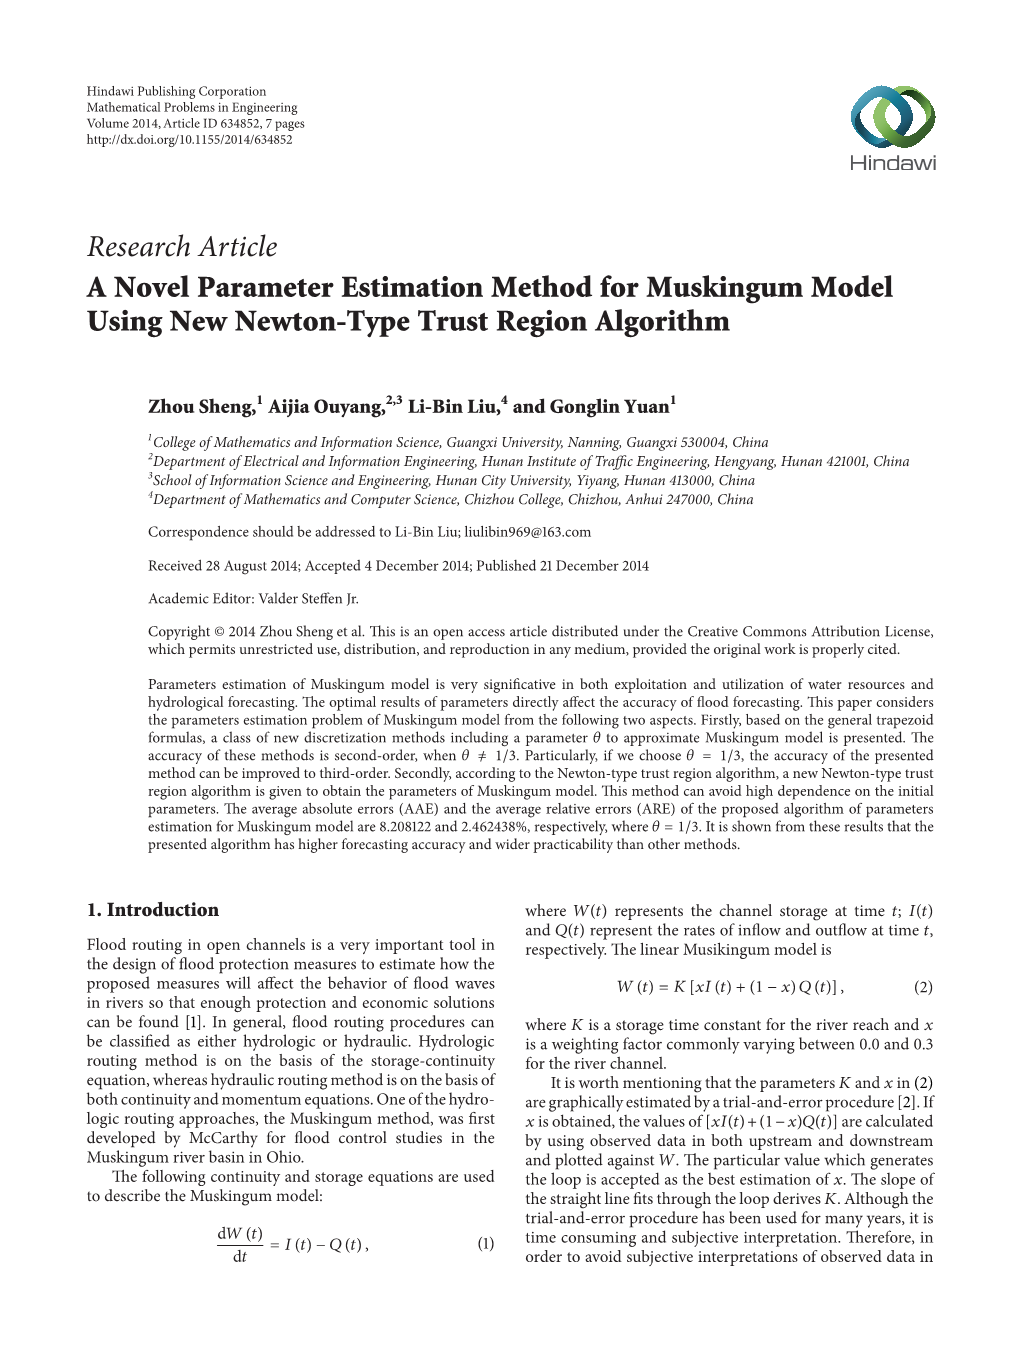 A Novel Parameter Estimation Method for Muskingum Model Using New Newton-Type Trust Region Algorithm